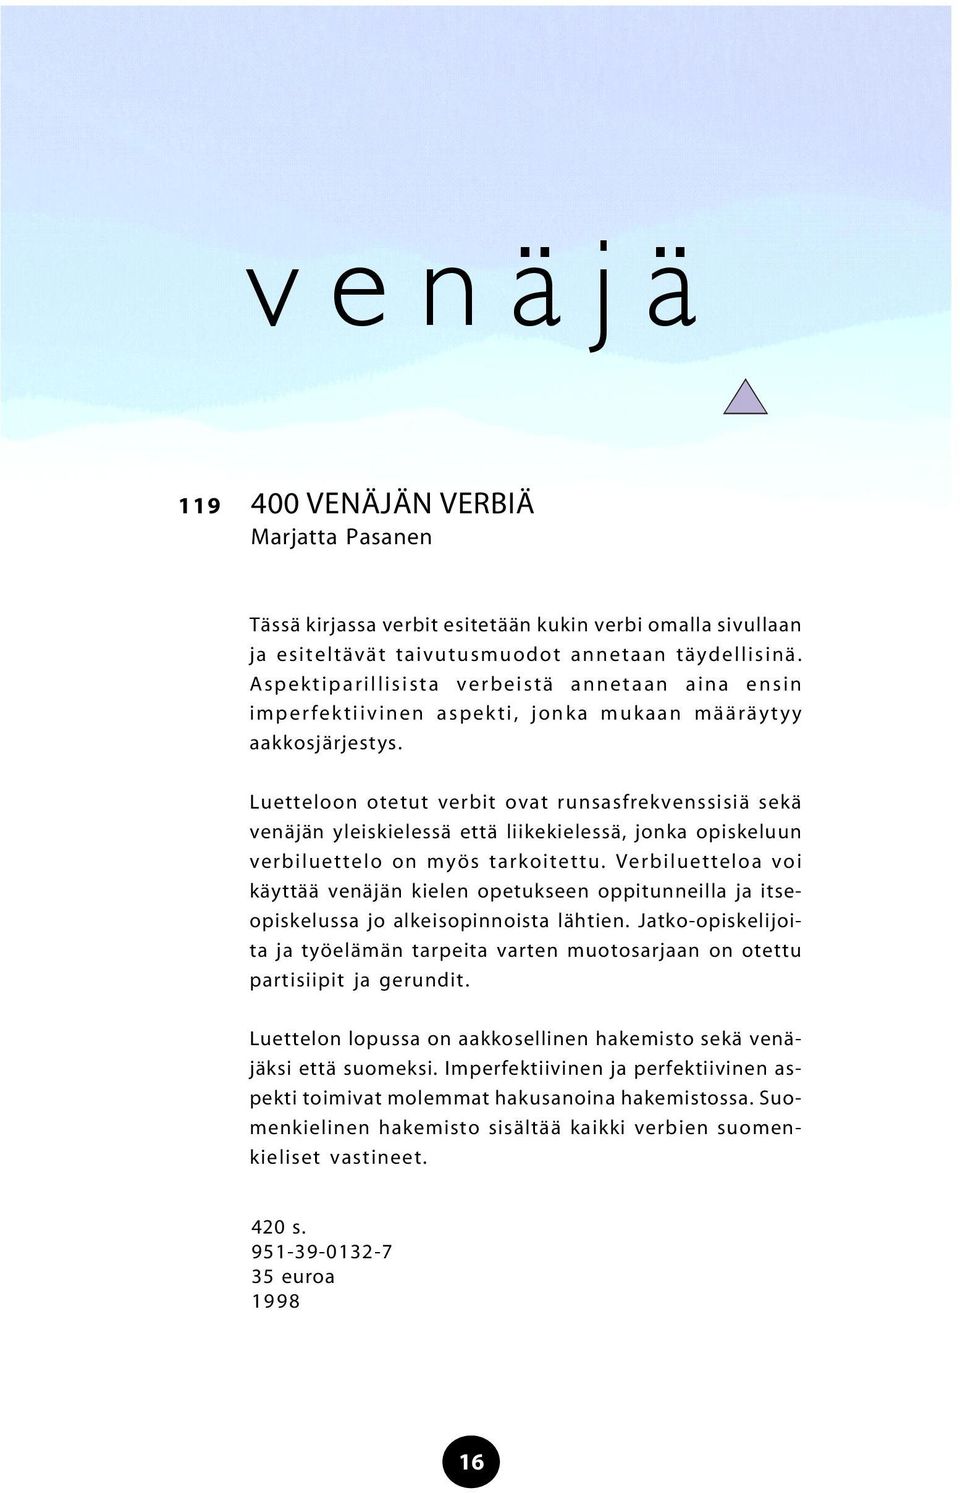 Luetteloon otetut verbit ovat runsasfrekvenssisiä sekä venäjän yleiskielessä että liikekielessä, jonka opiskeluun verbiluettelo on myös tarkoitettu.